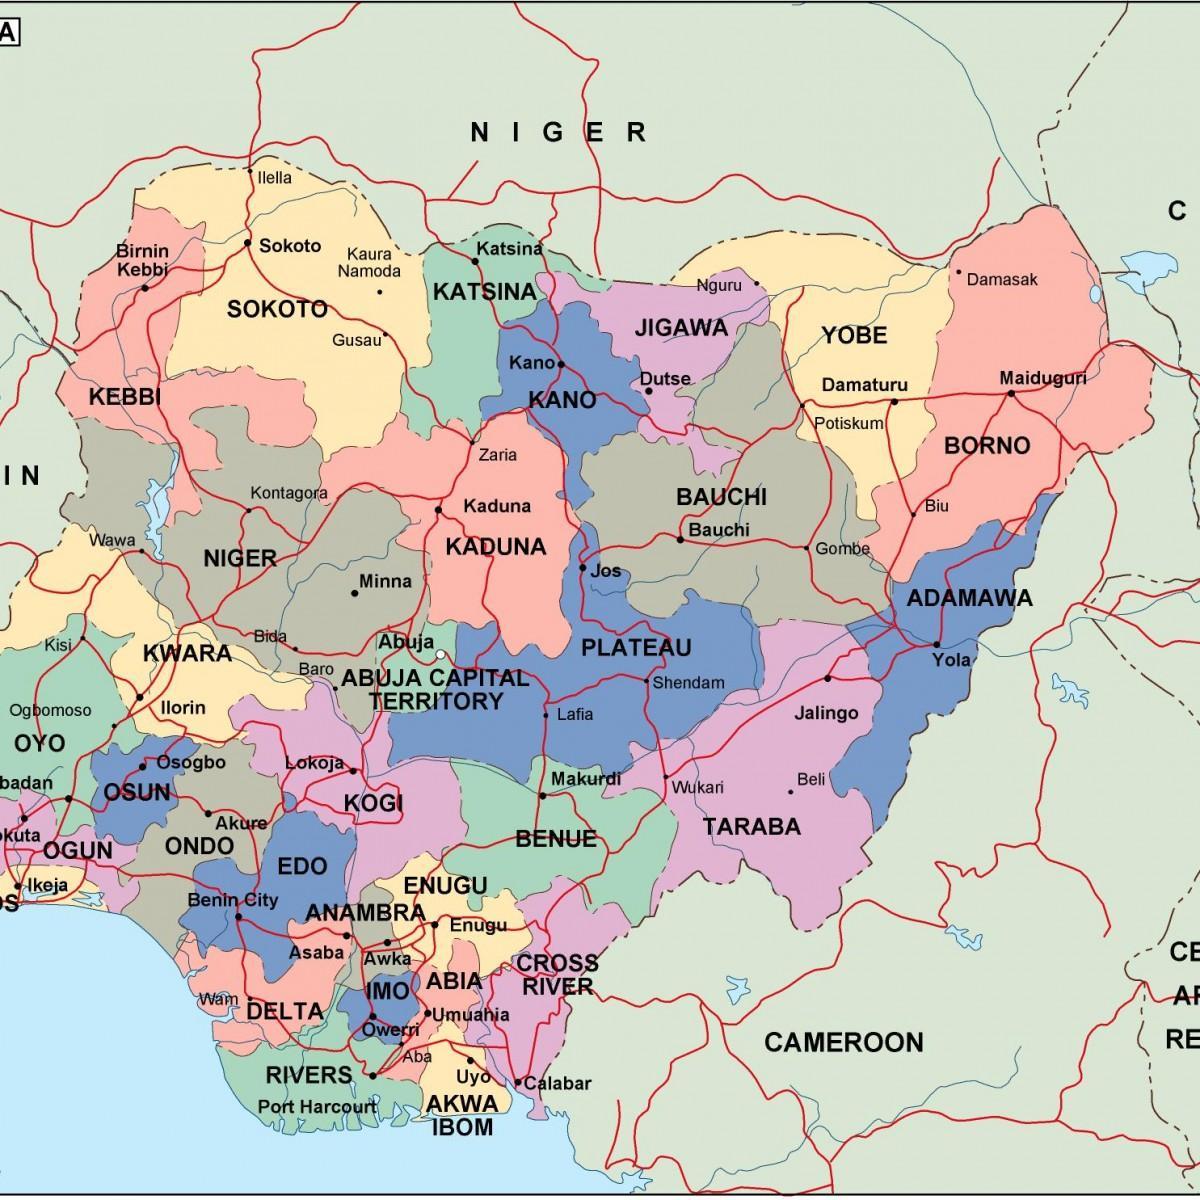 מפה של ניגריה עם מדינות וערים.